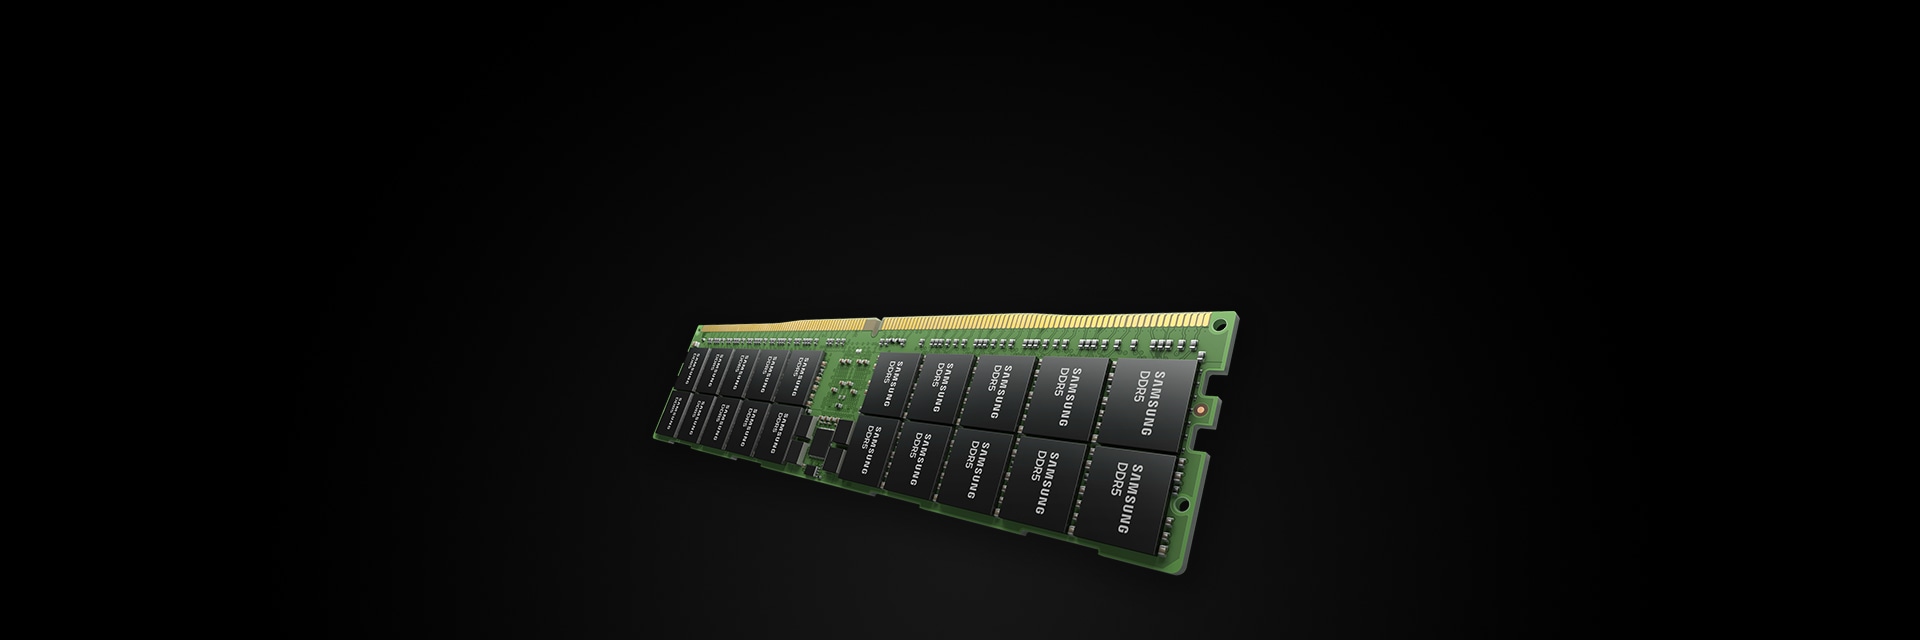 삼성반도체 DRAM 모듈, 다용도 메모리 모듈